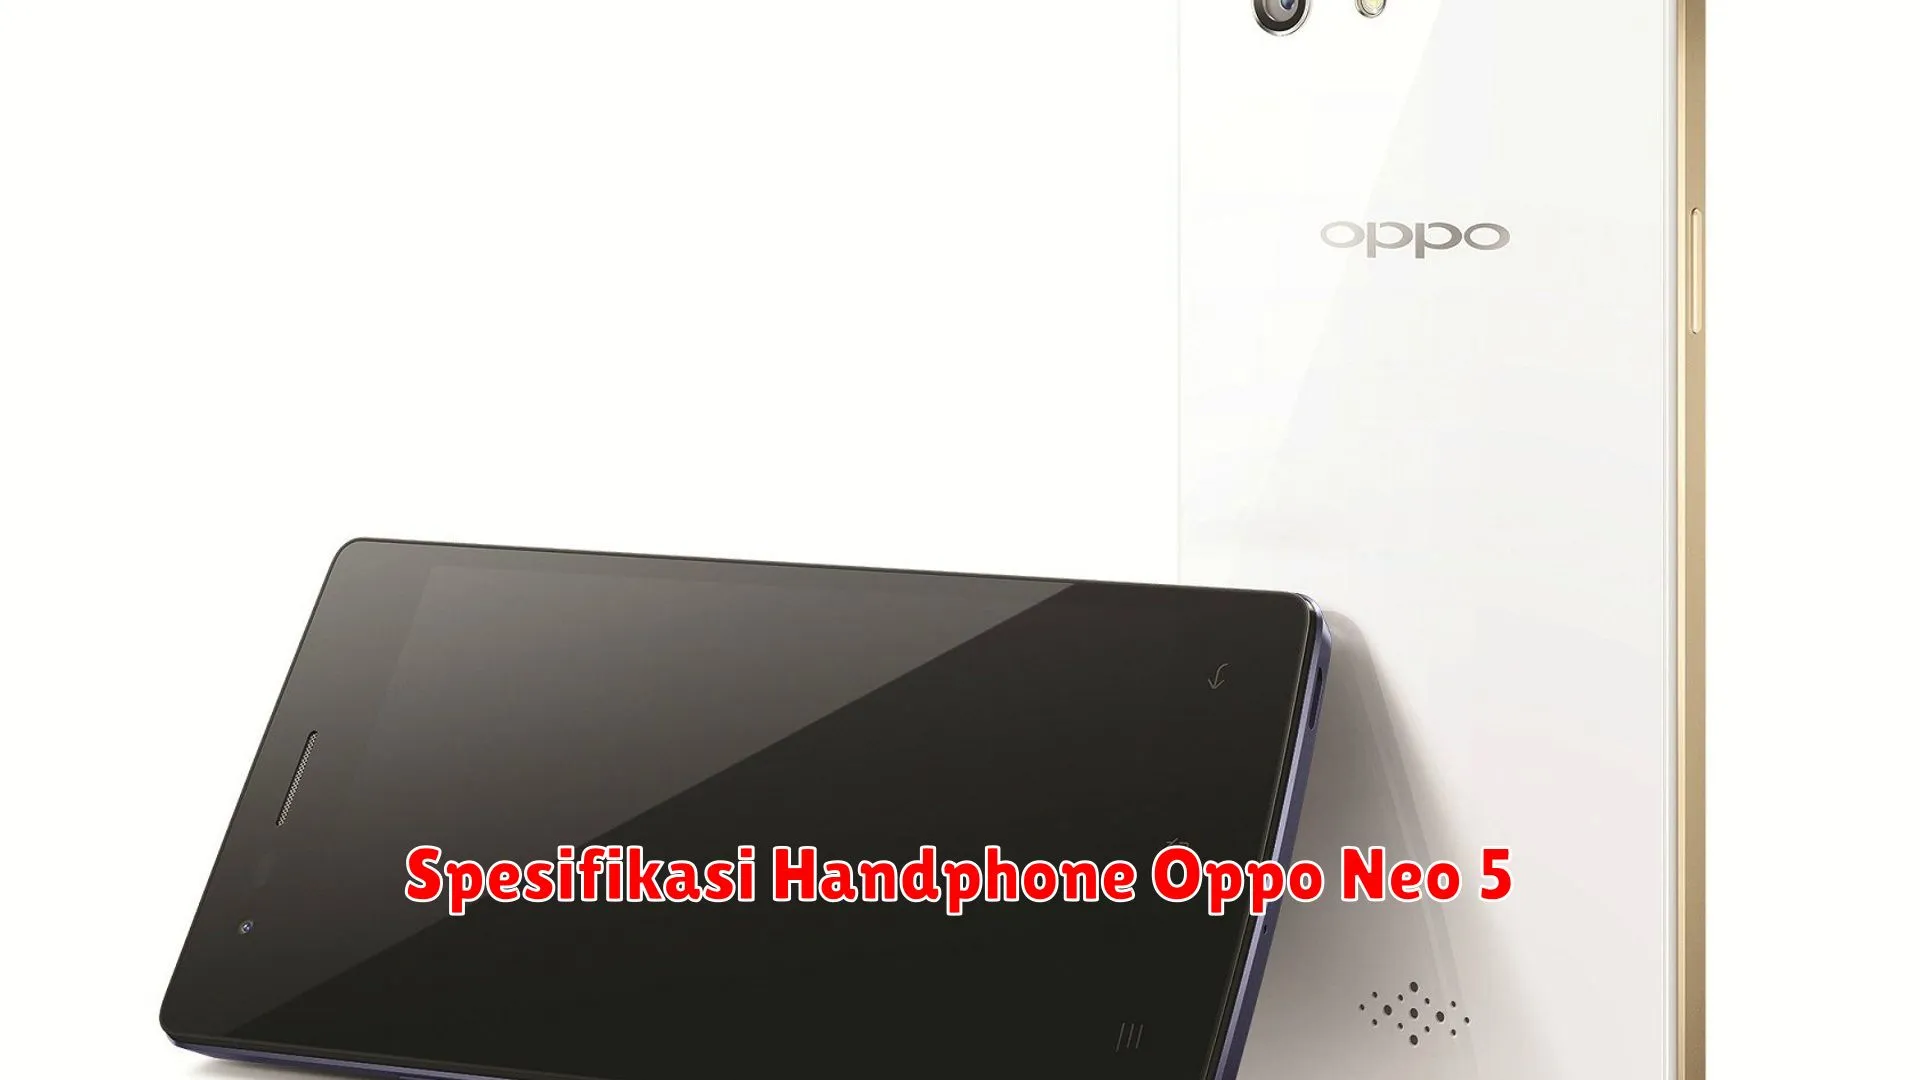 Spesifikasi Handphone Oppo Neo 5